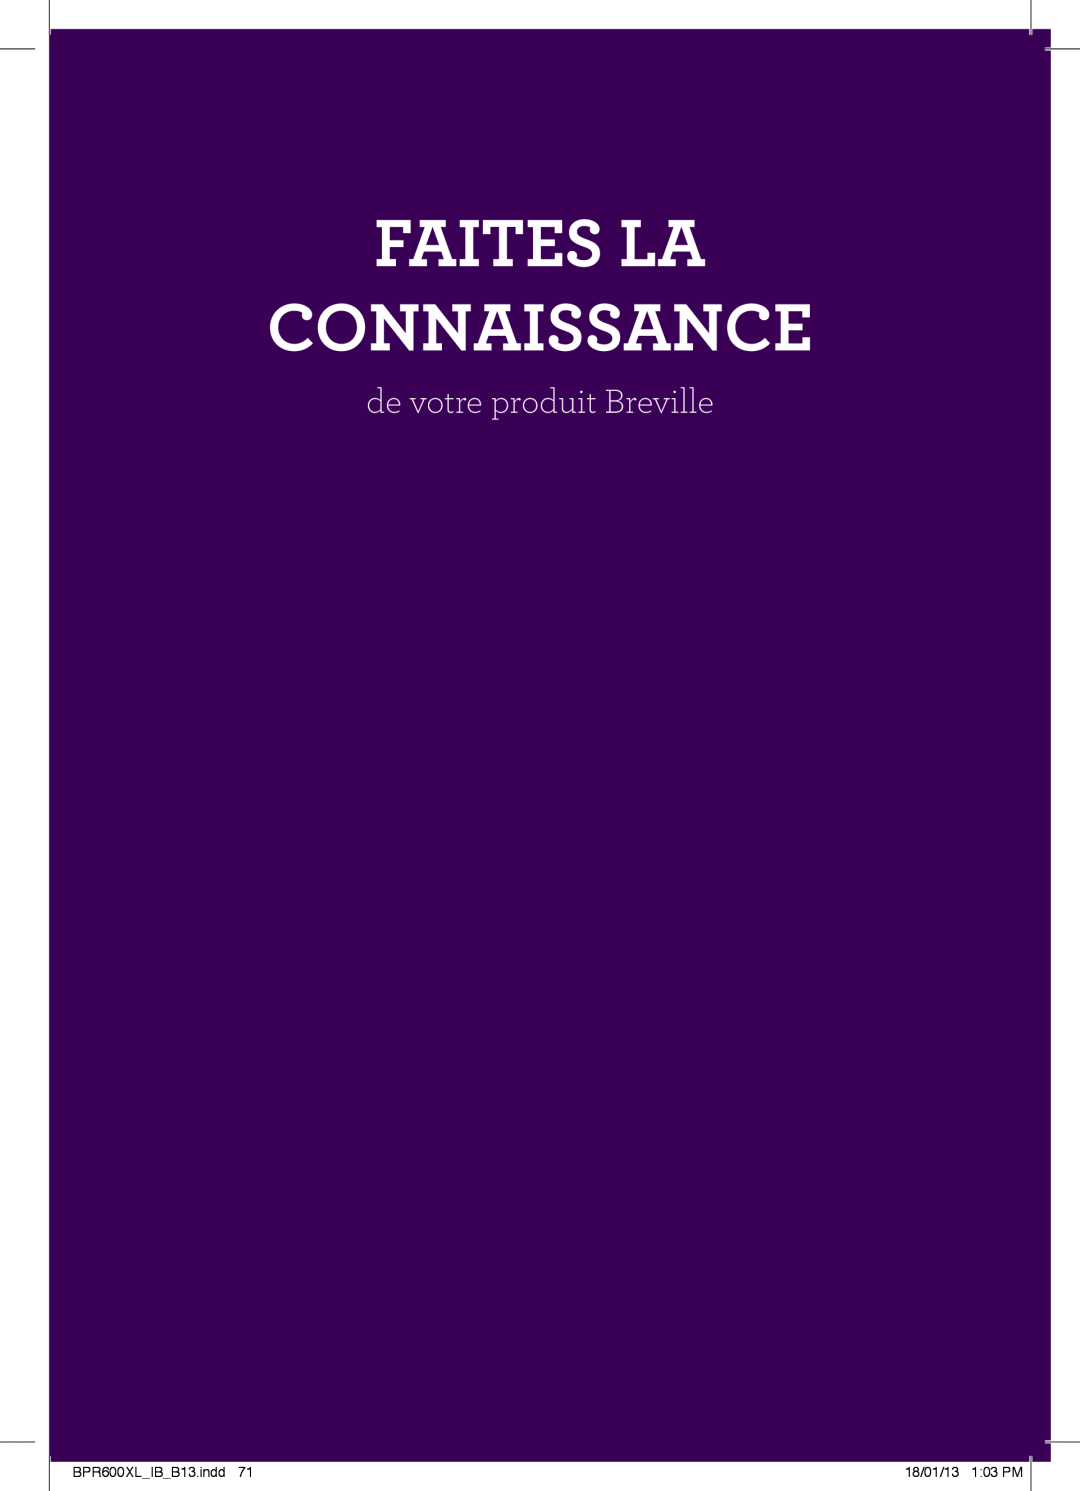 Breville manual Faites La Connaissance, de votre produit Breville, BPR600XLIBB13.indd, 18/01/13 103 PM 